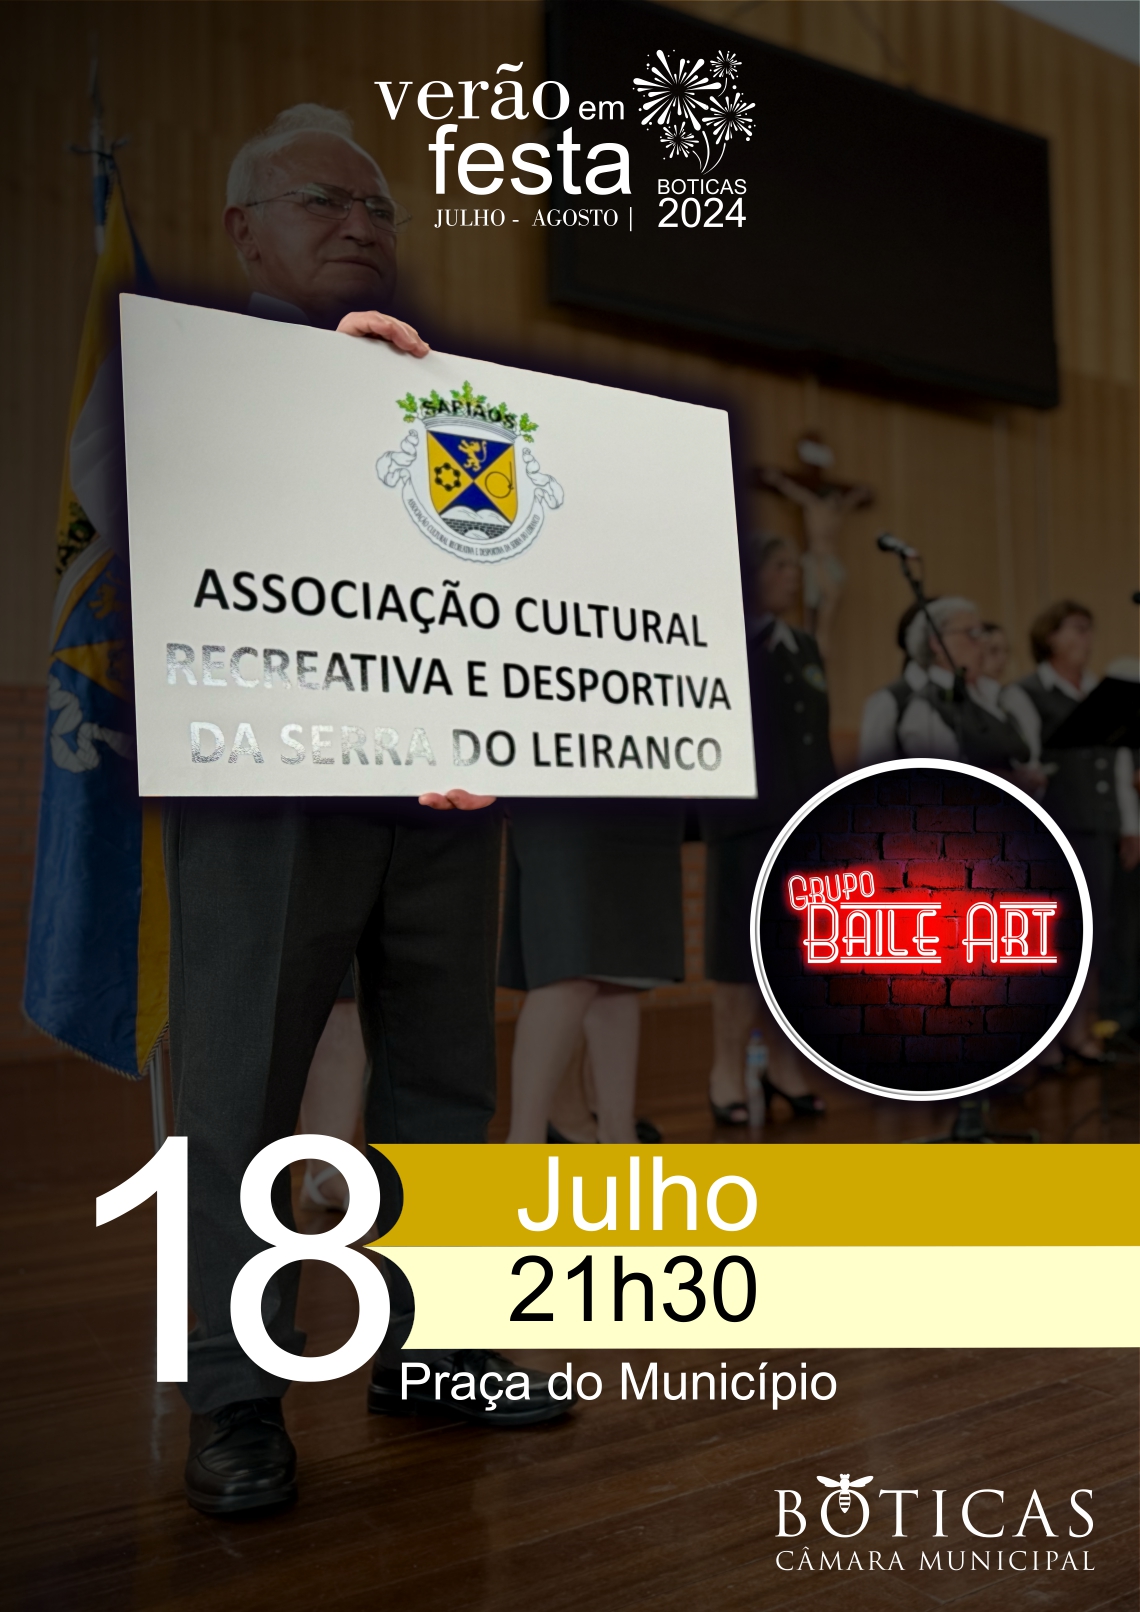 Associao Serra do Leiranco + Baile Art | Vero em Festa 2024